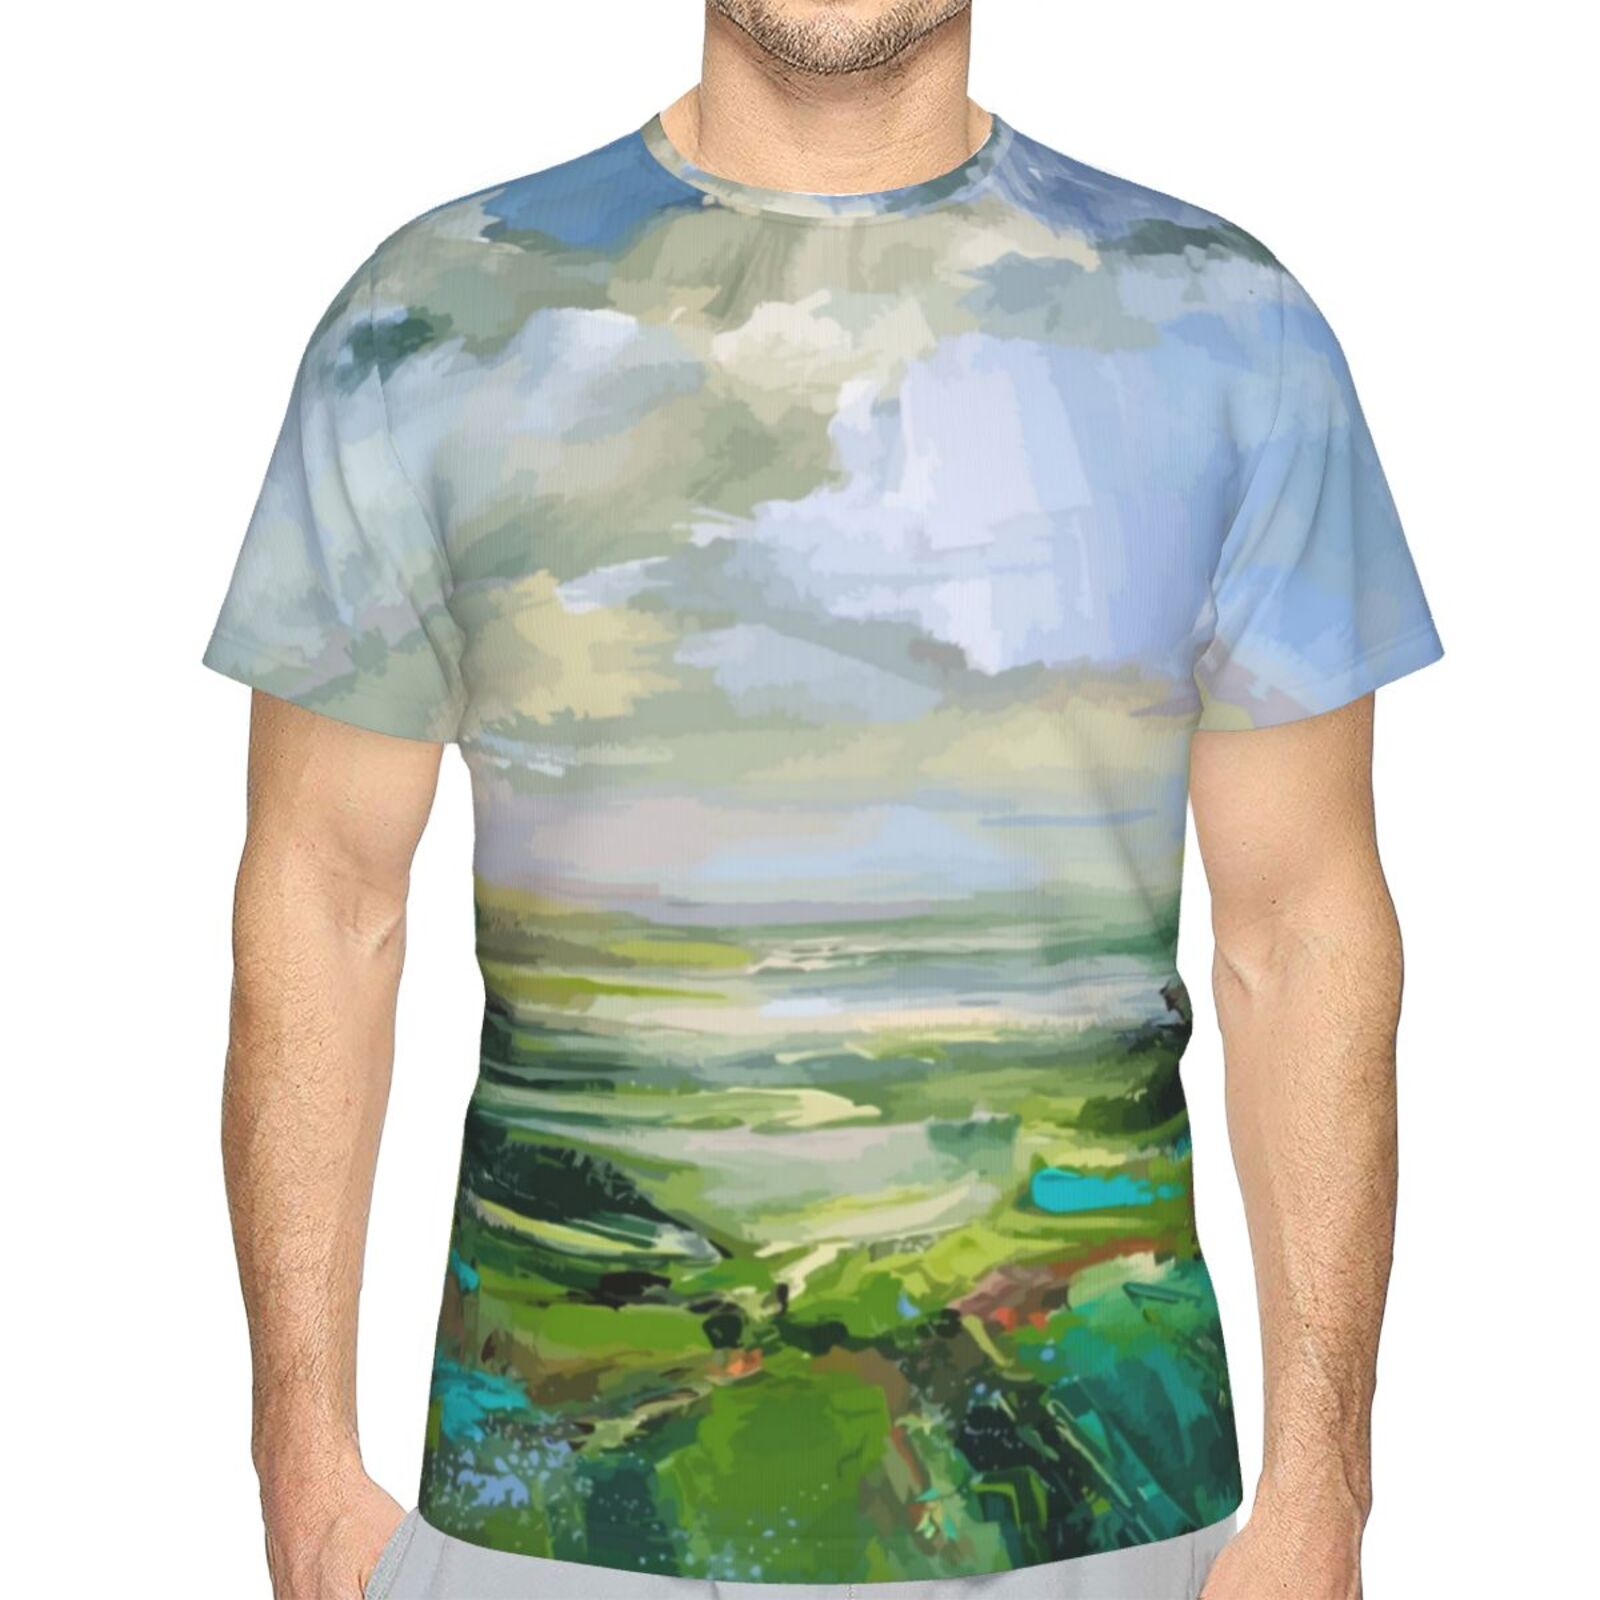 Klassisches Österreich T-shirt Mit Sommergrün-malelementen